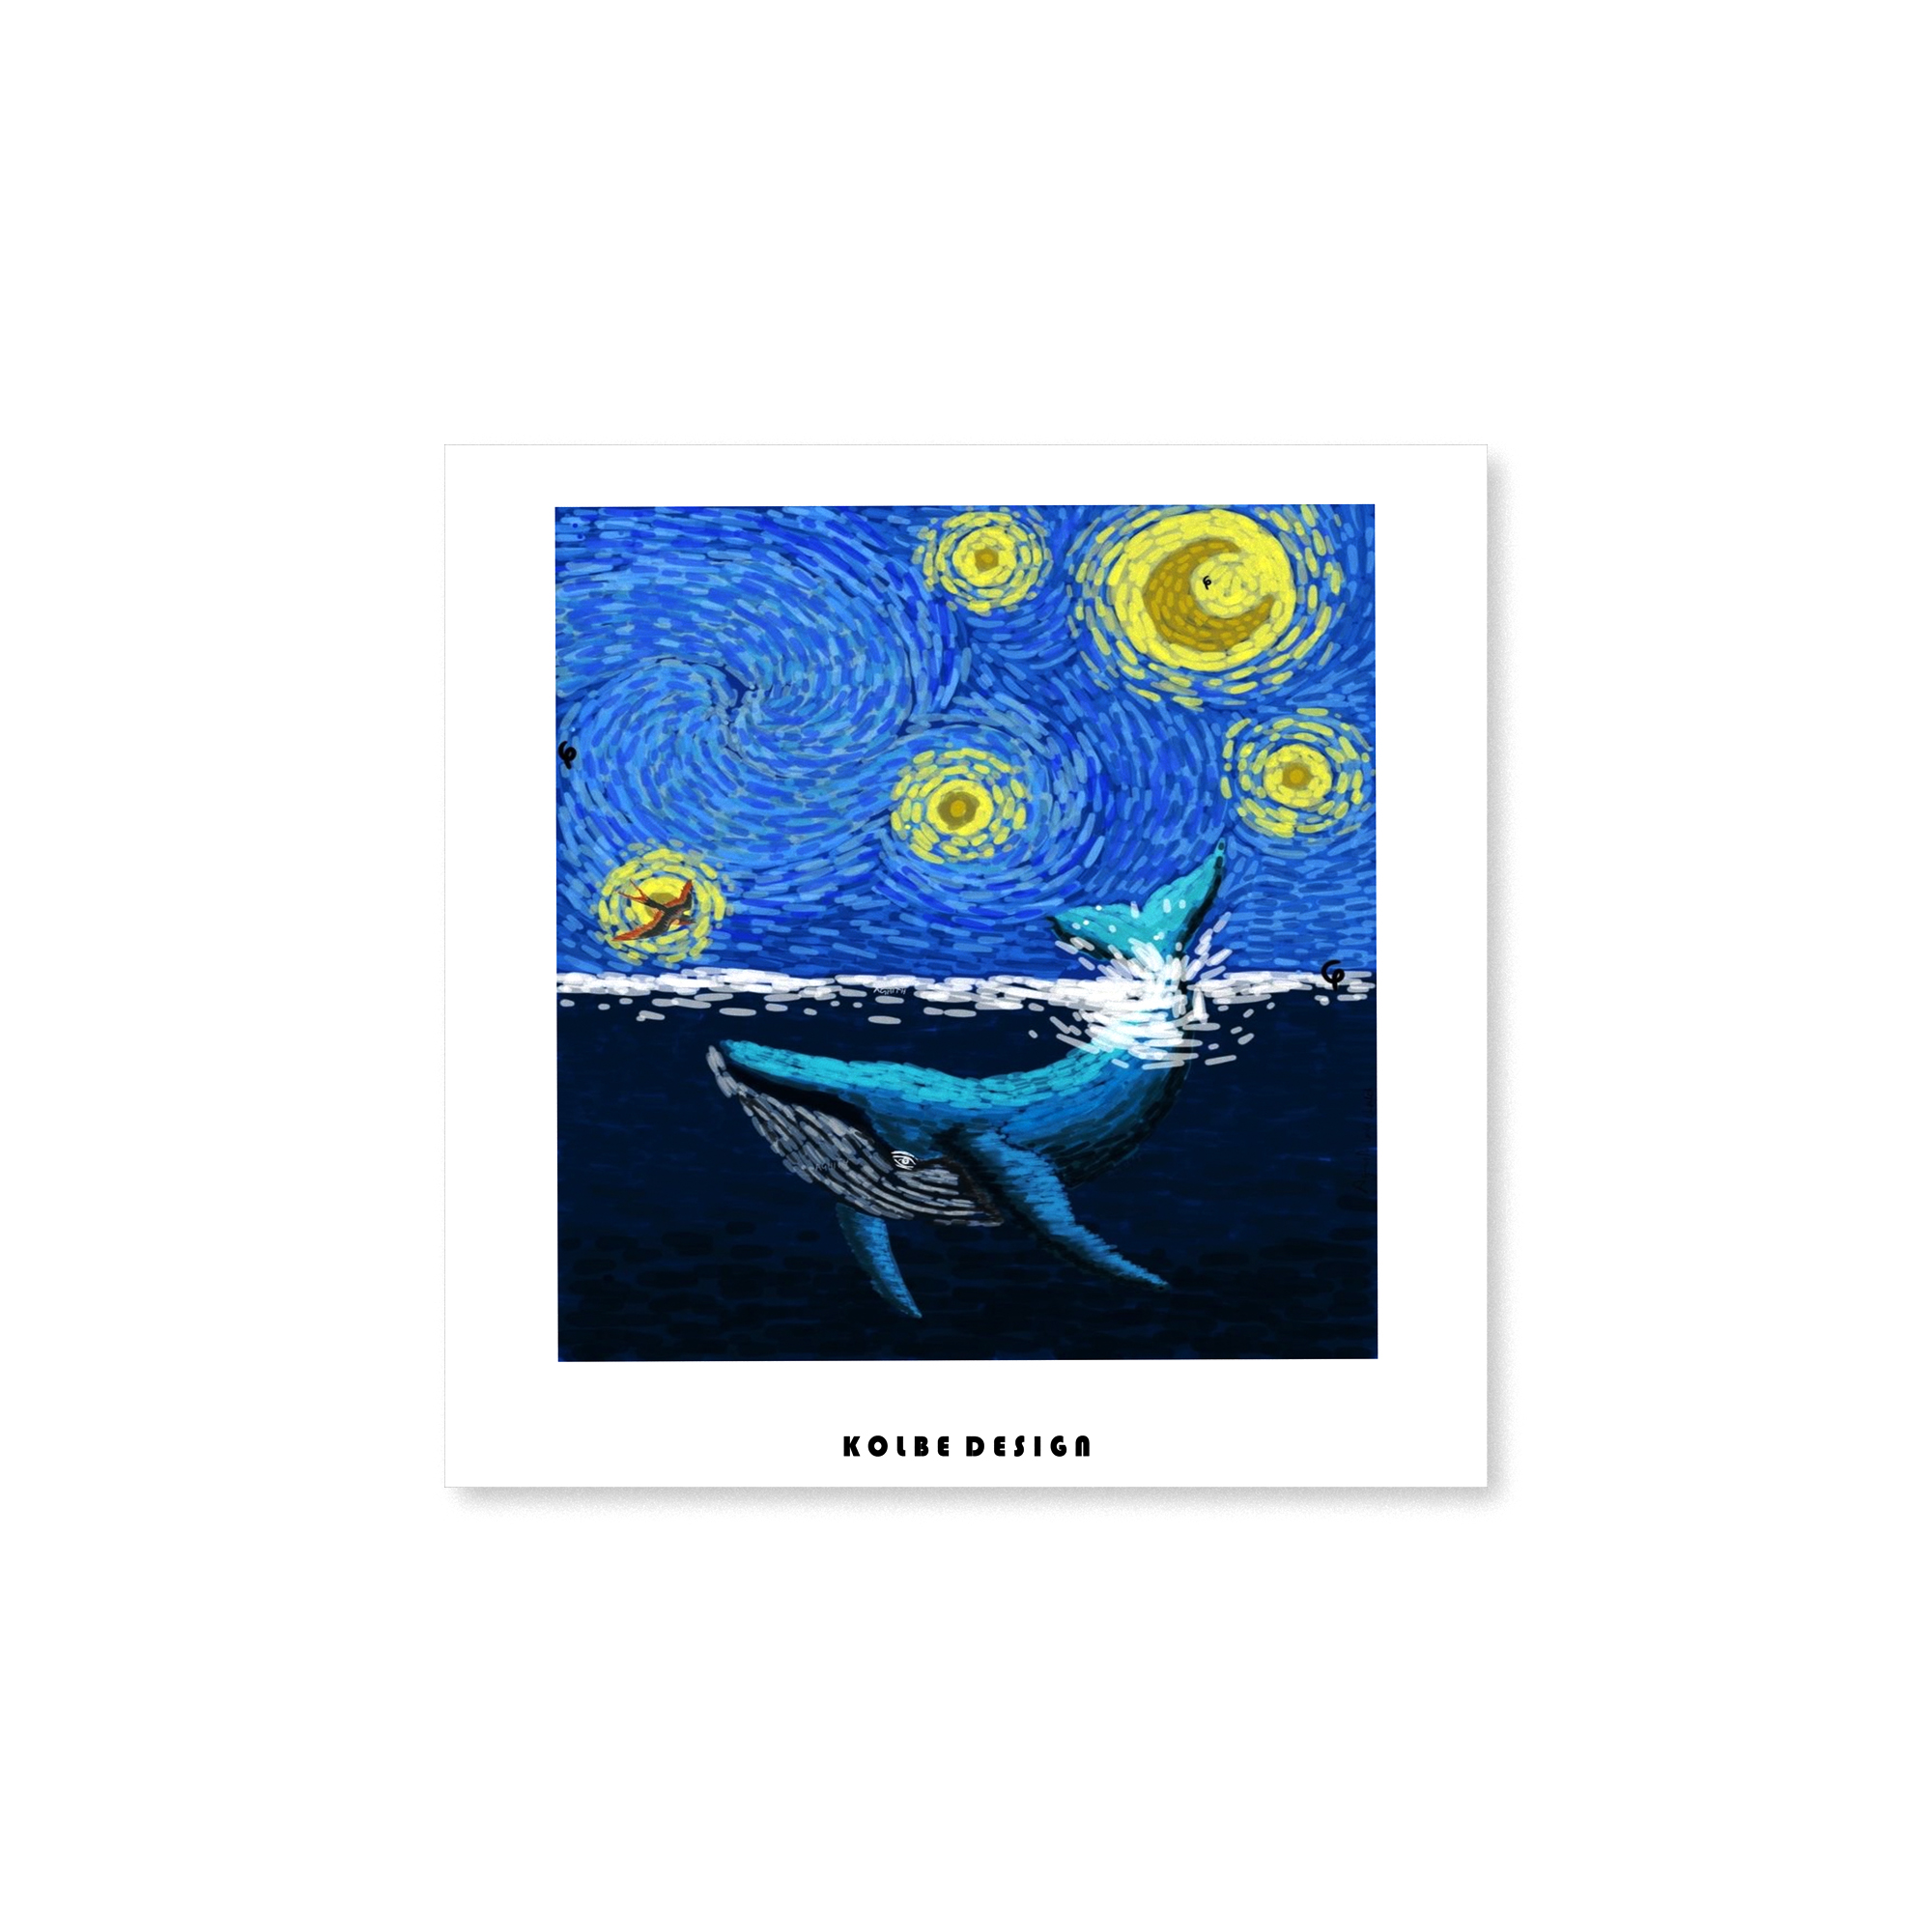 کارت پستال کلبه دیزاین مدل نهنگ از سبک نقاشی های ون گوگ کد POST 02